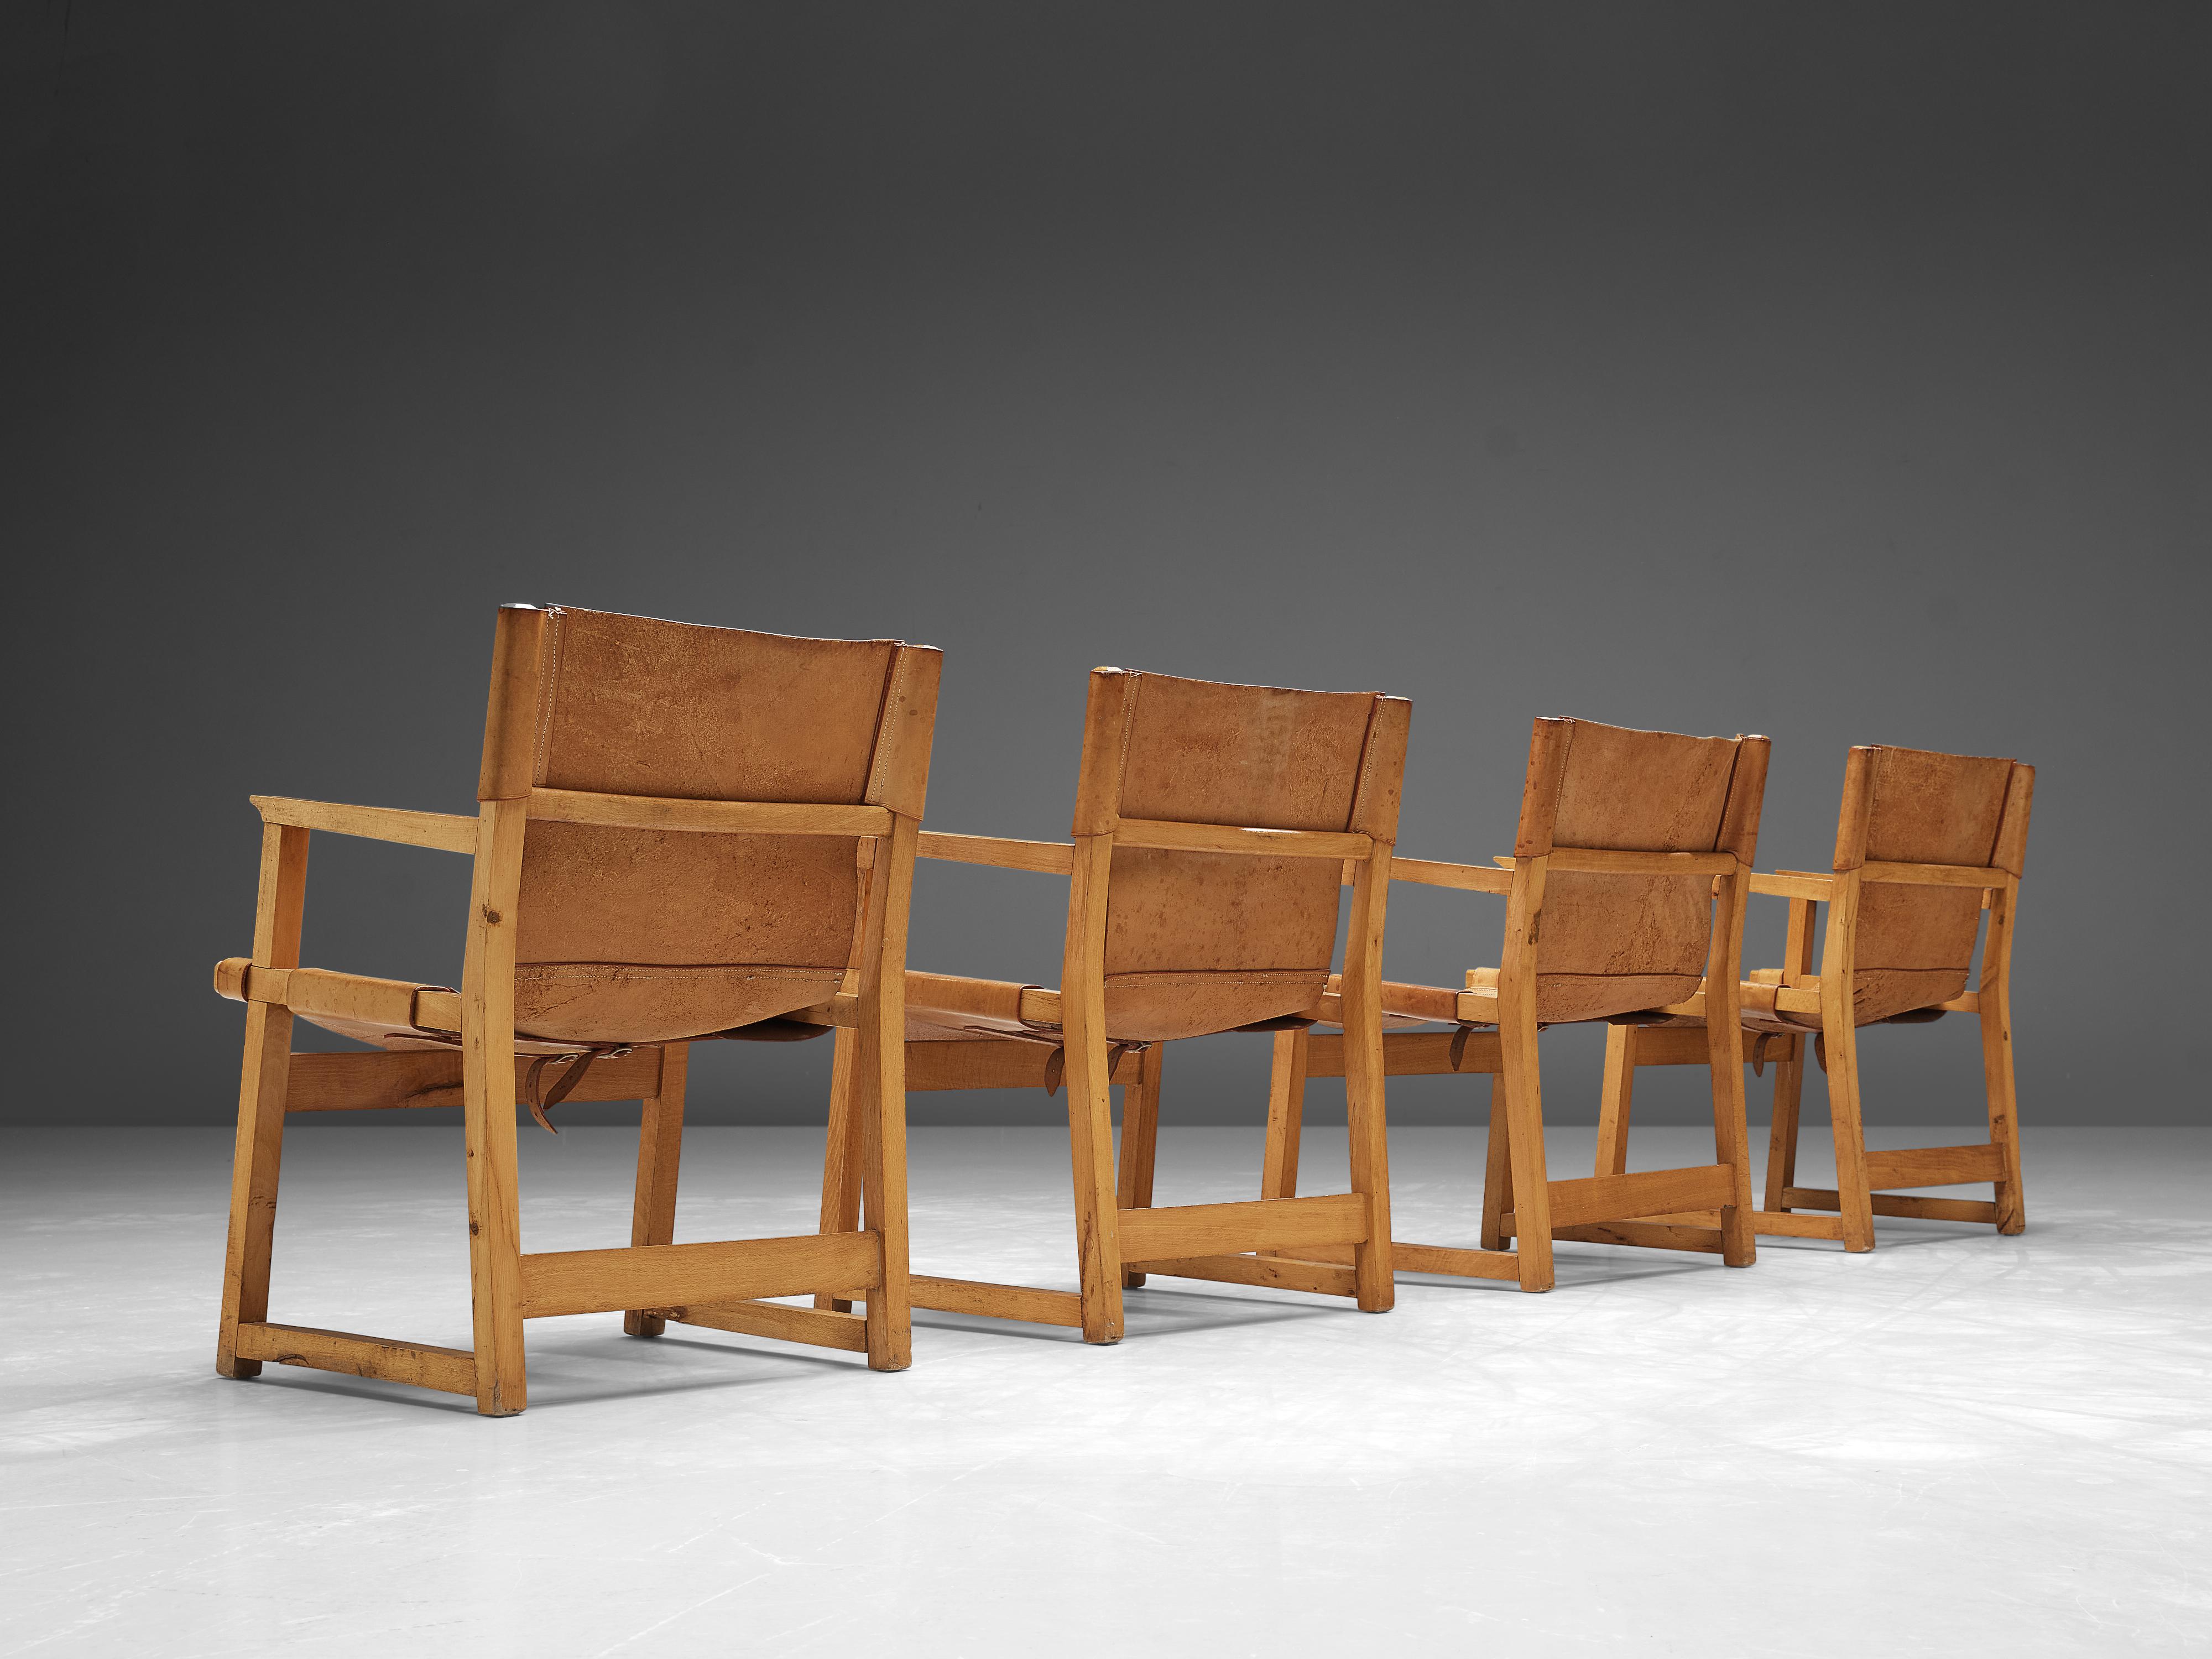 Paco Muñoz, ensemble de quatre fauteuils, cuir, hêtre, Espagne, années 1950

Fauteuils Safari ou 